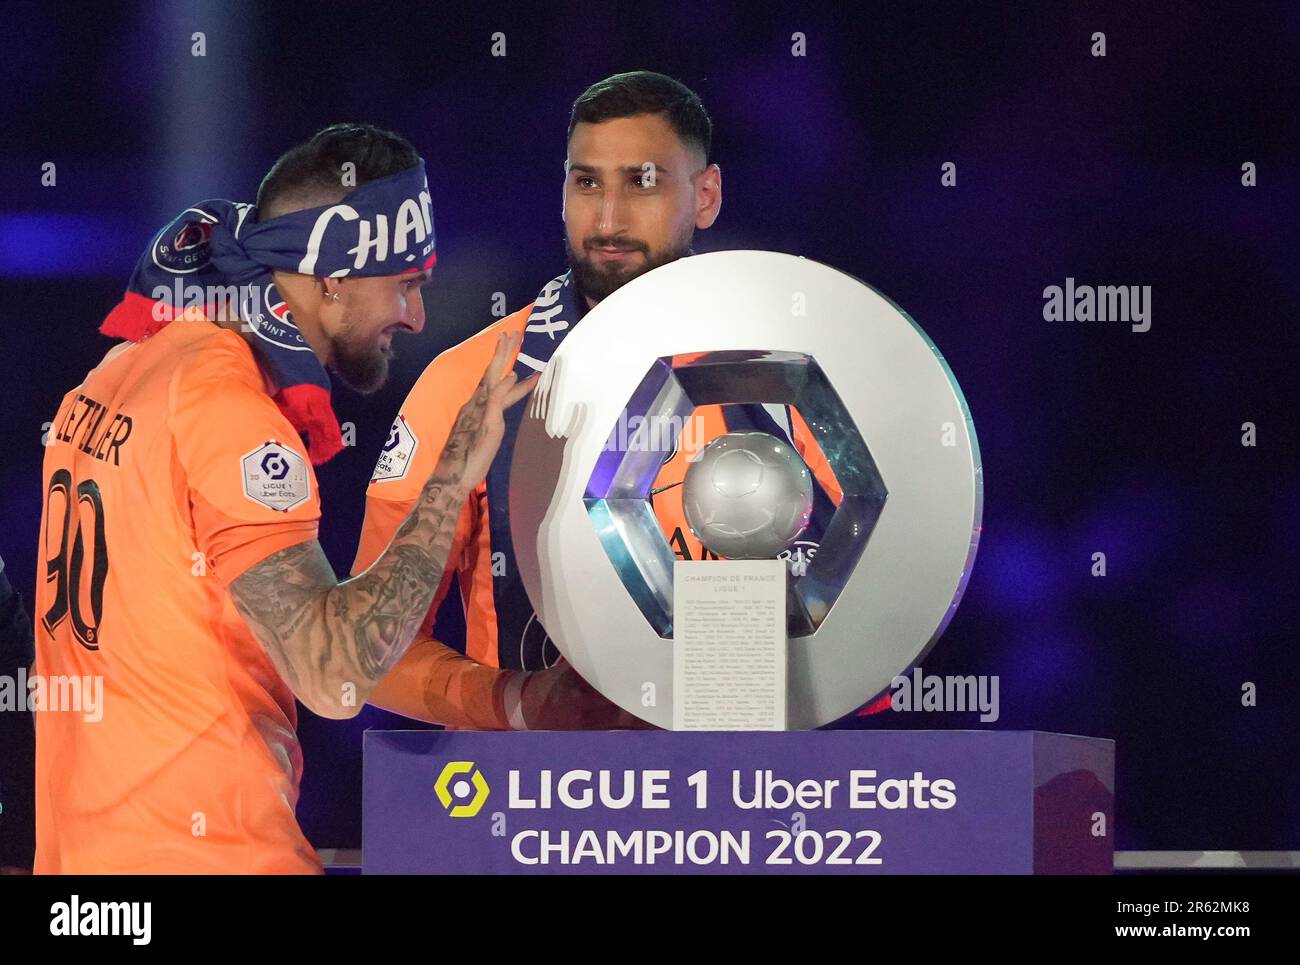 Portiere Gianluigi DONNARUMMA & portiere Alexandre Letellier (a sinistra) di PSG durante le celebrazioni post match per la vittoria della 2022/23 Ligue 1 tit Foto Stock